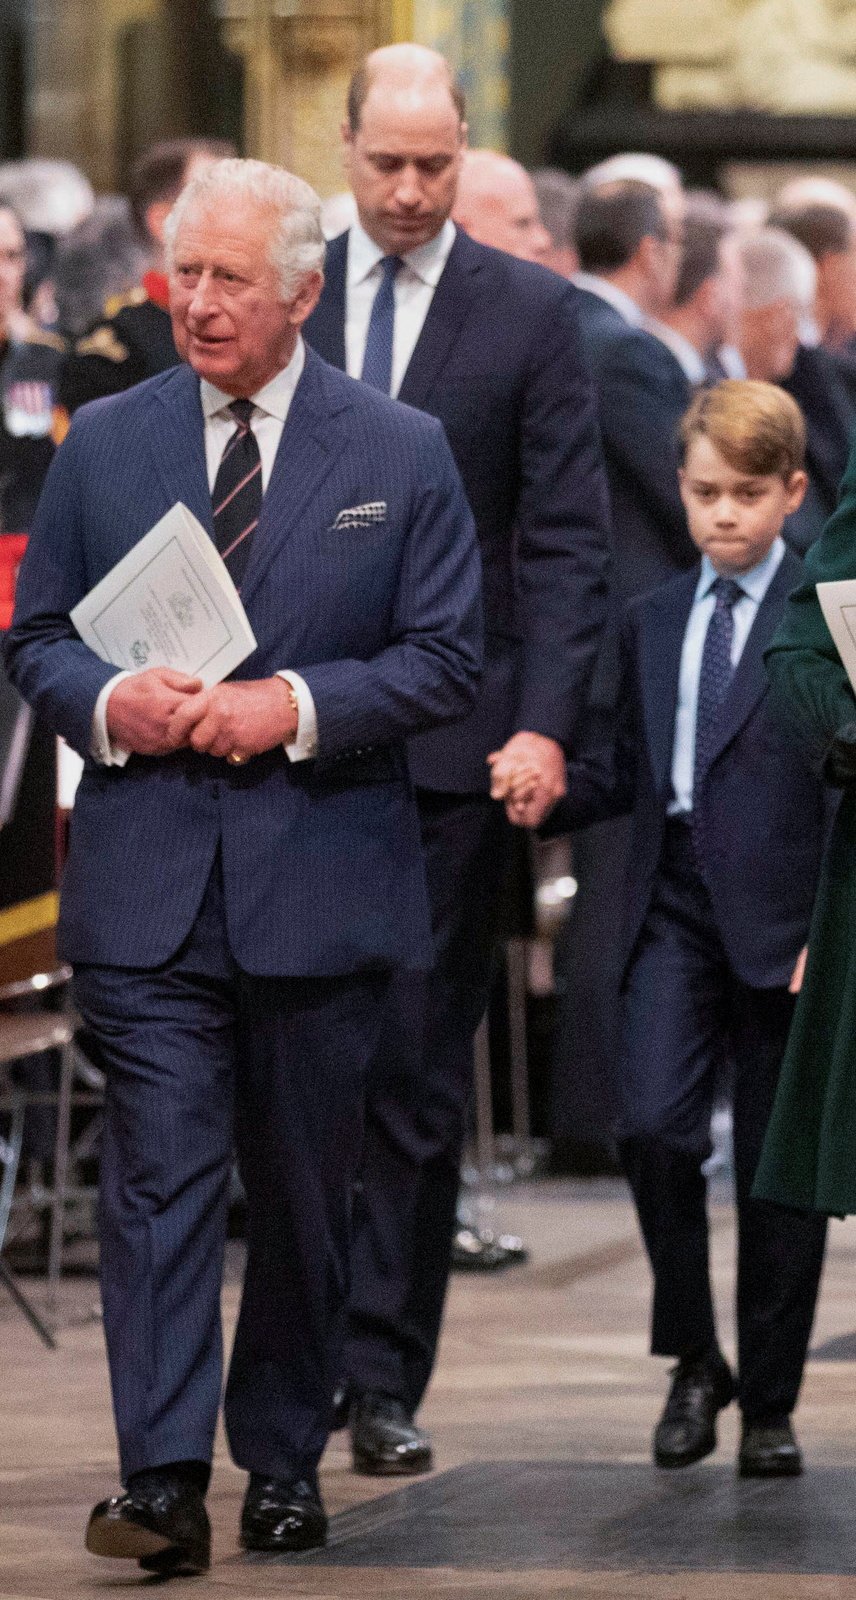 Vzpomínková mše na prince Philipa ve Westminsterském opatství - princ Charles, princ William a princ George